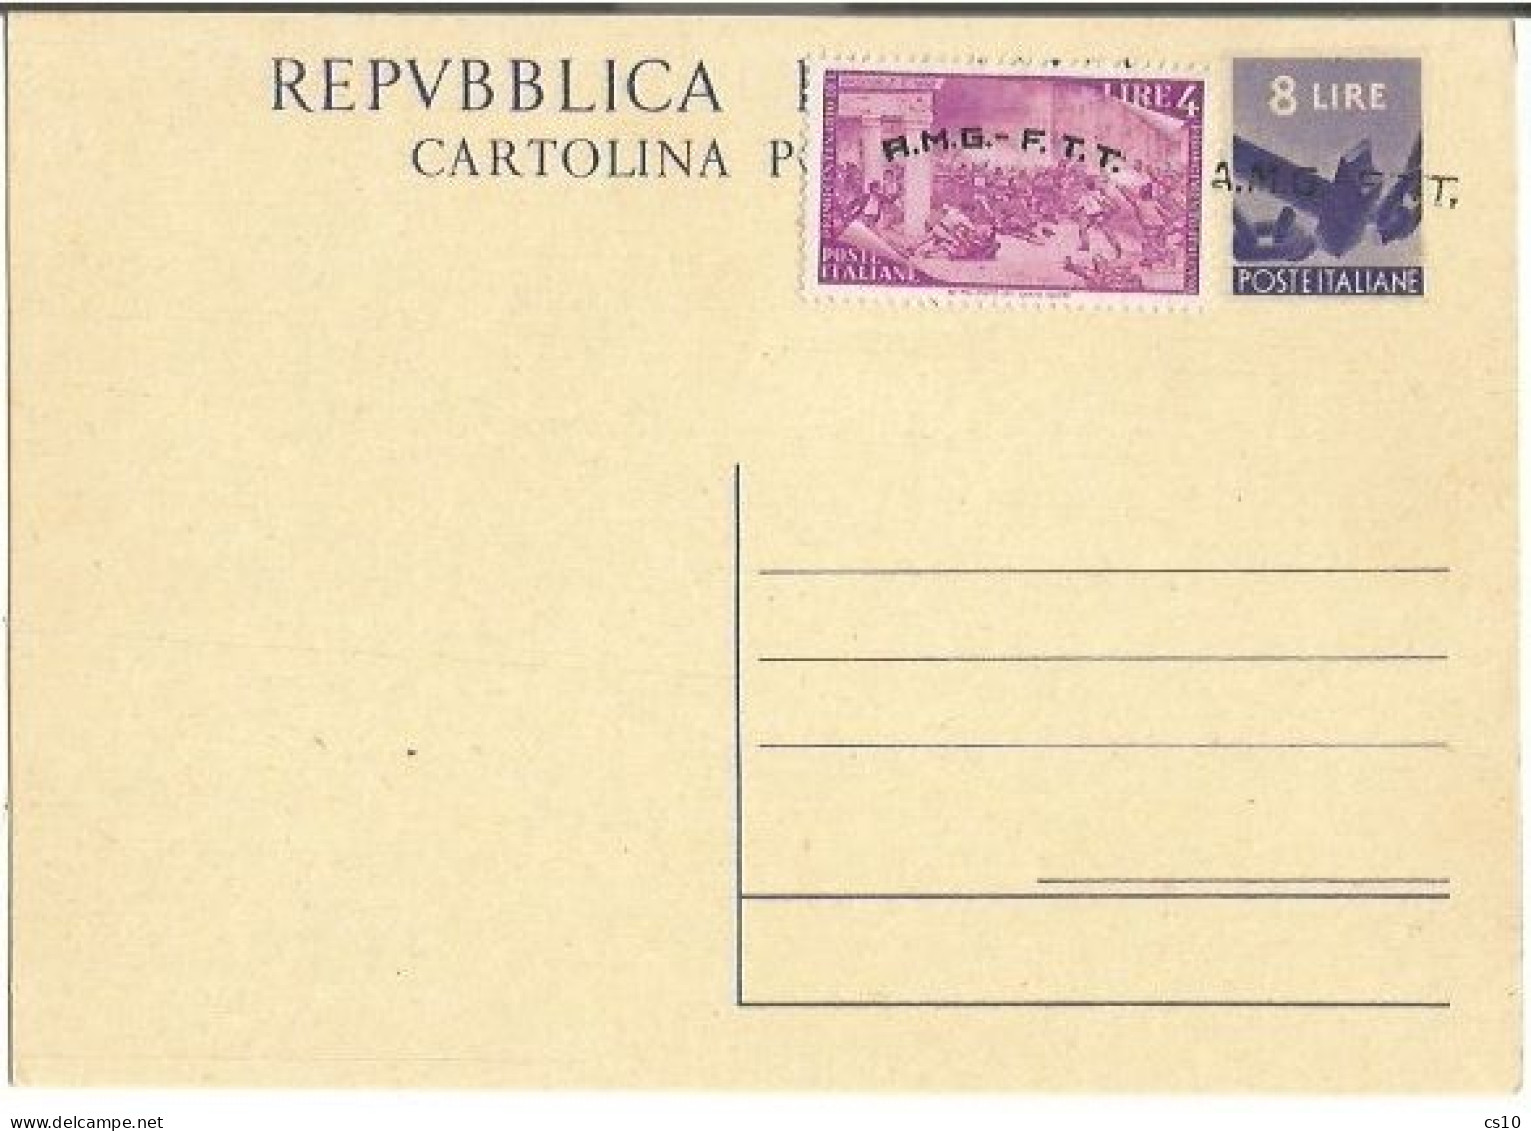 Trieste "A" AMG-FTT 1947 Cart.Postale Democratica L.8 #C2 Soprast.A Con Risorgimento L.4 Nuova NON VIAGGIATA - Marcofilie